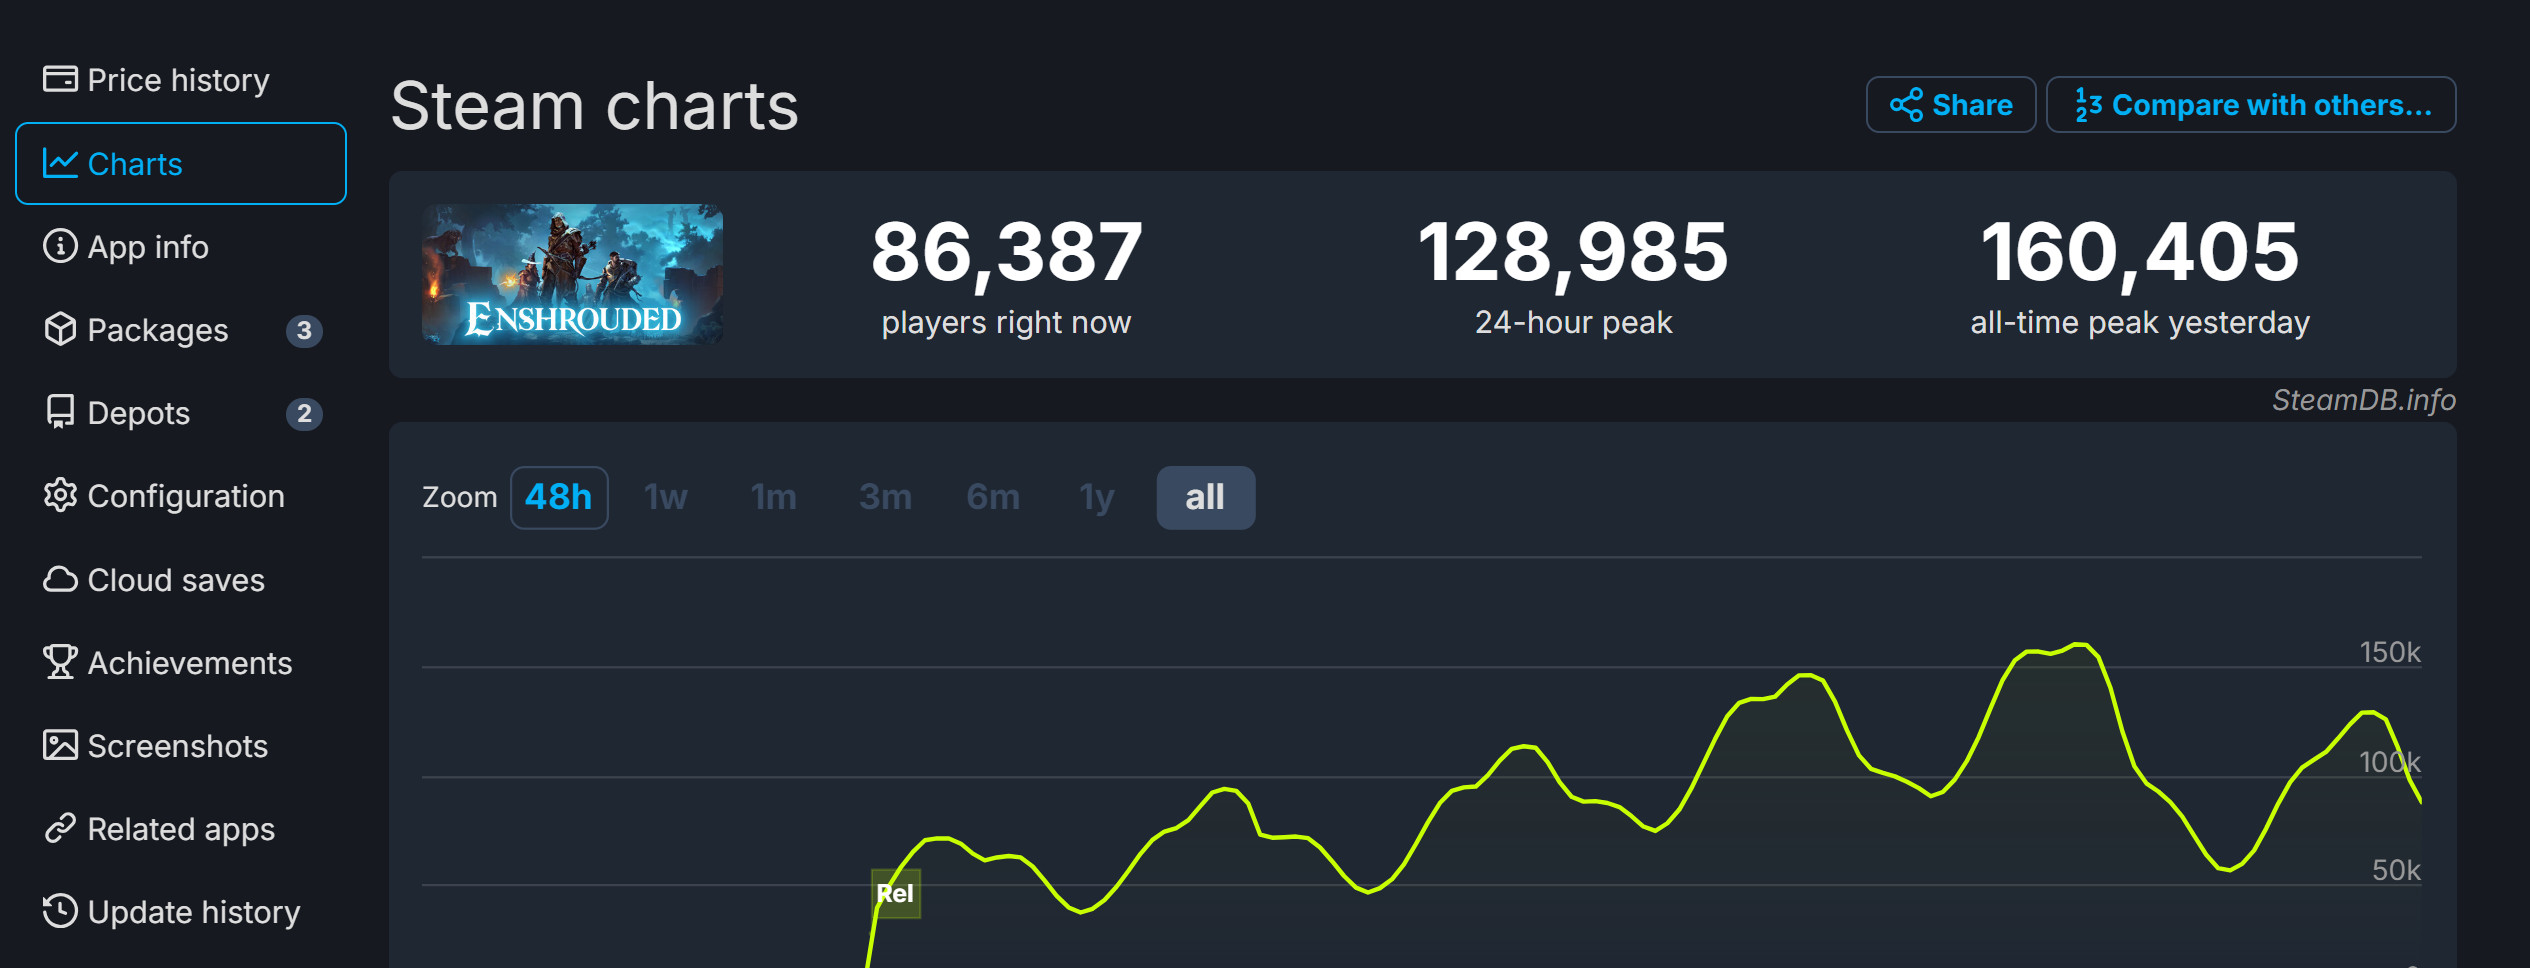 《雾锁王国》发售4天 总玩家现已突破100万-2Q博客